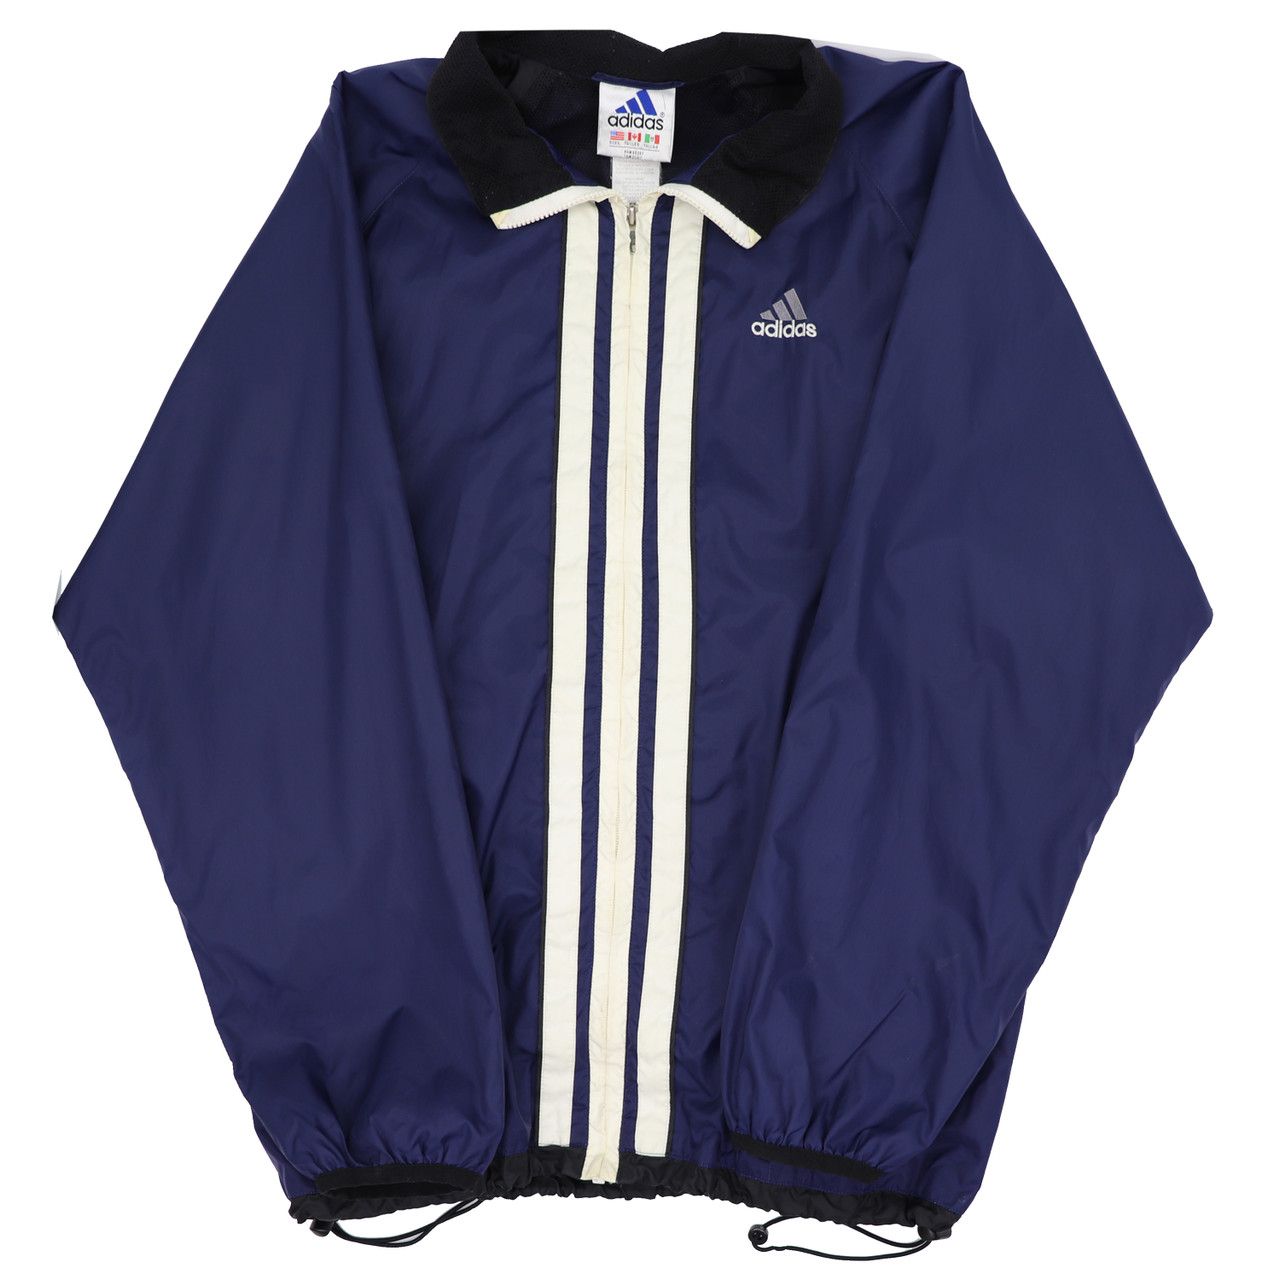 1990s adidas jacket